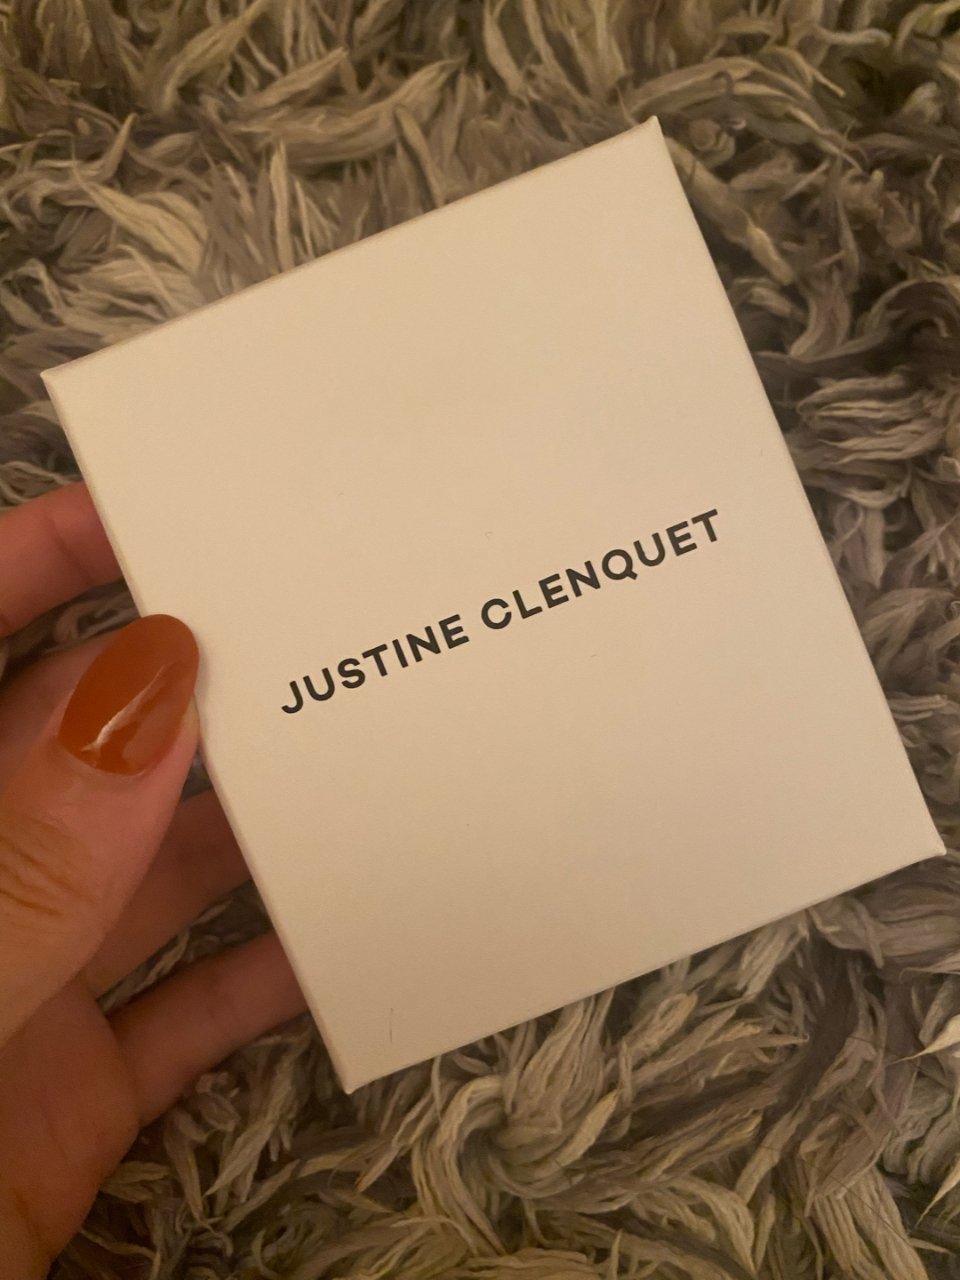 Justine clenquet